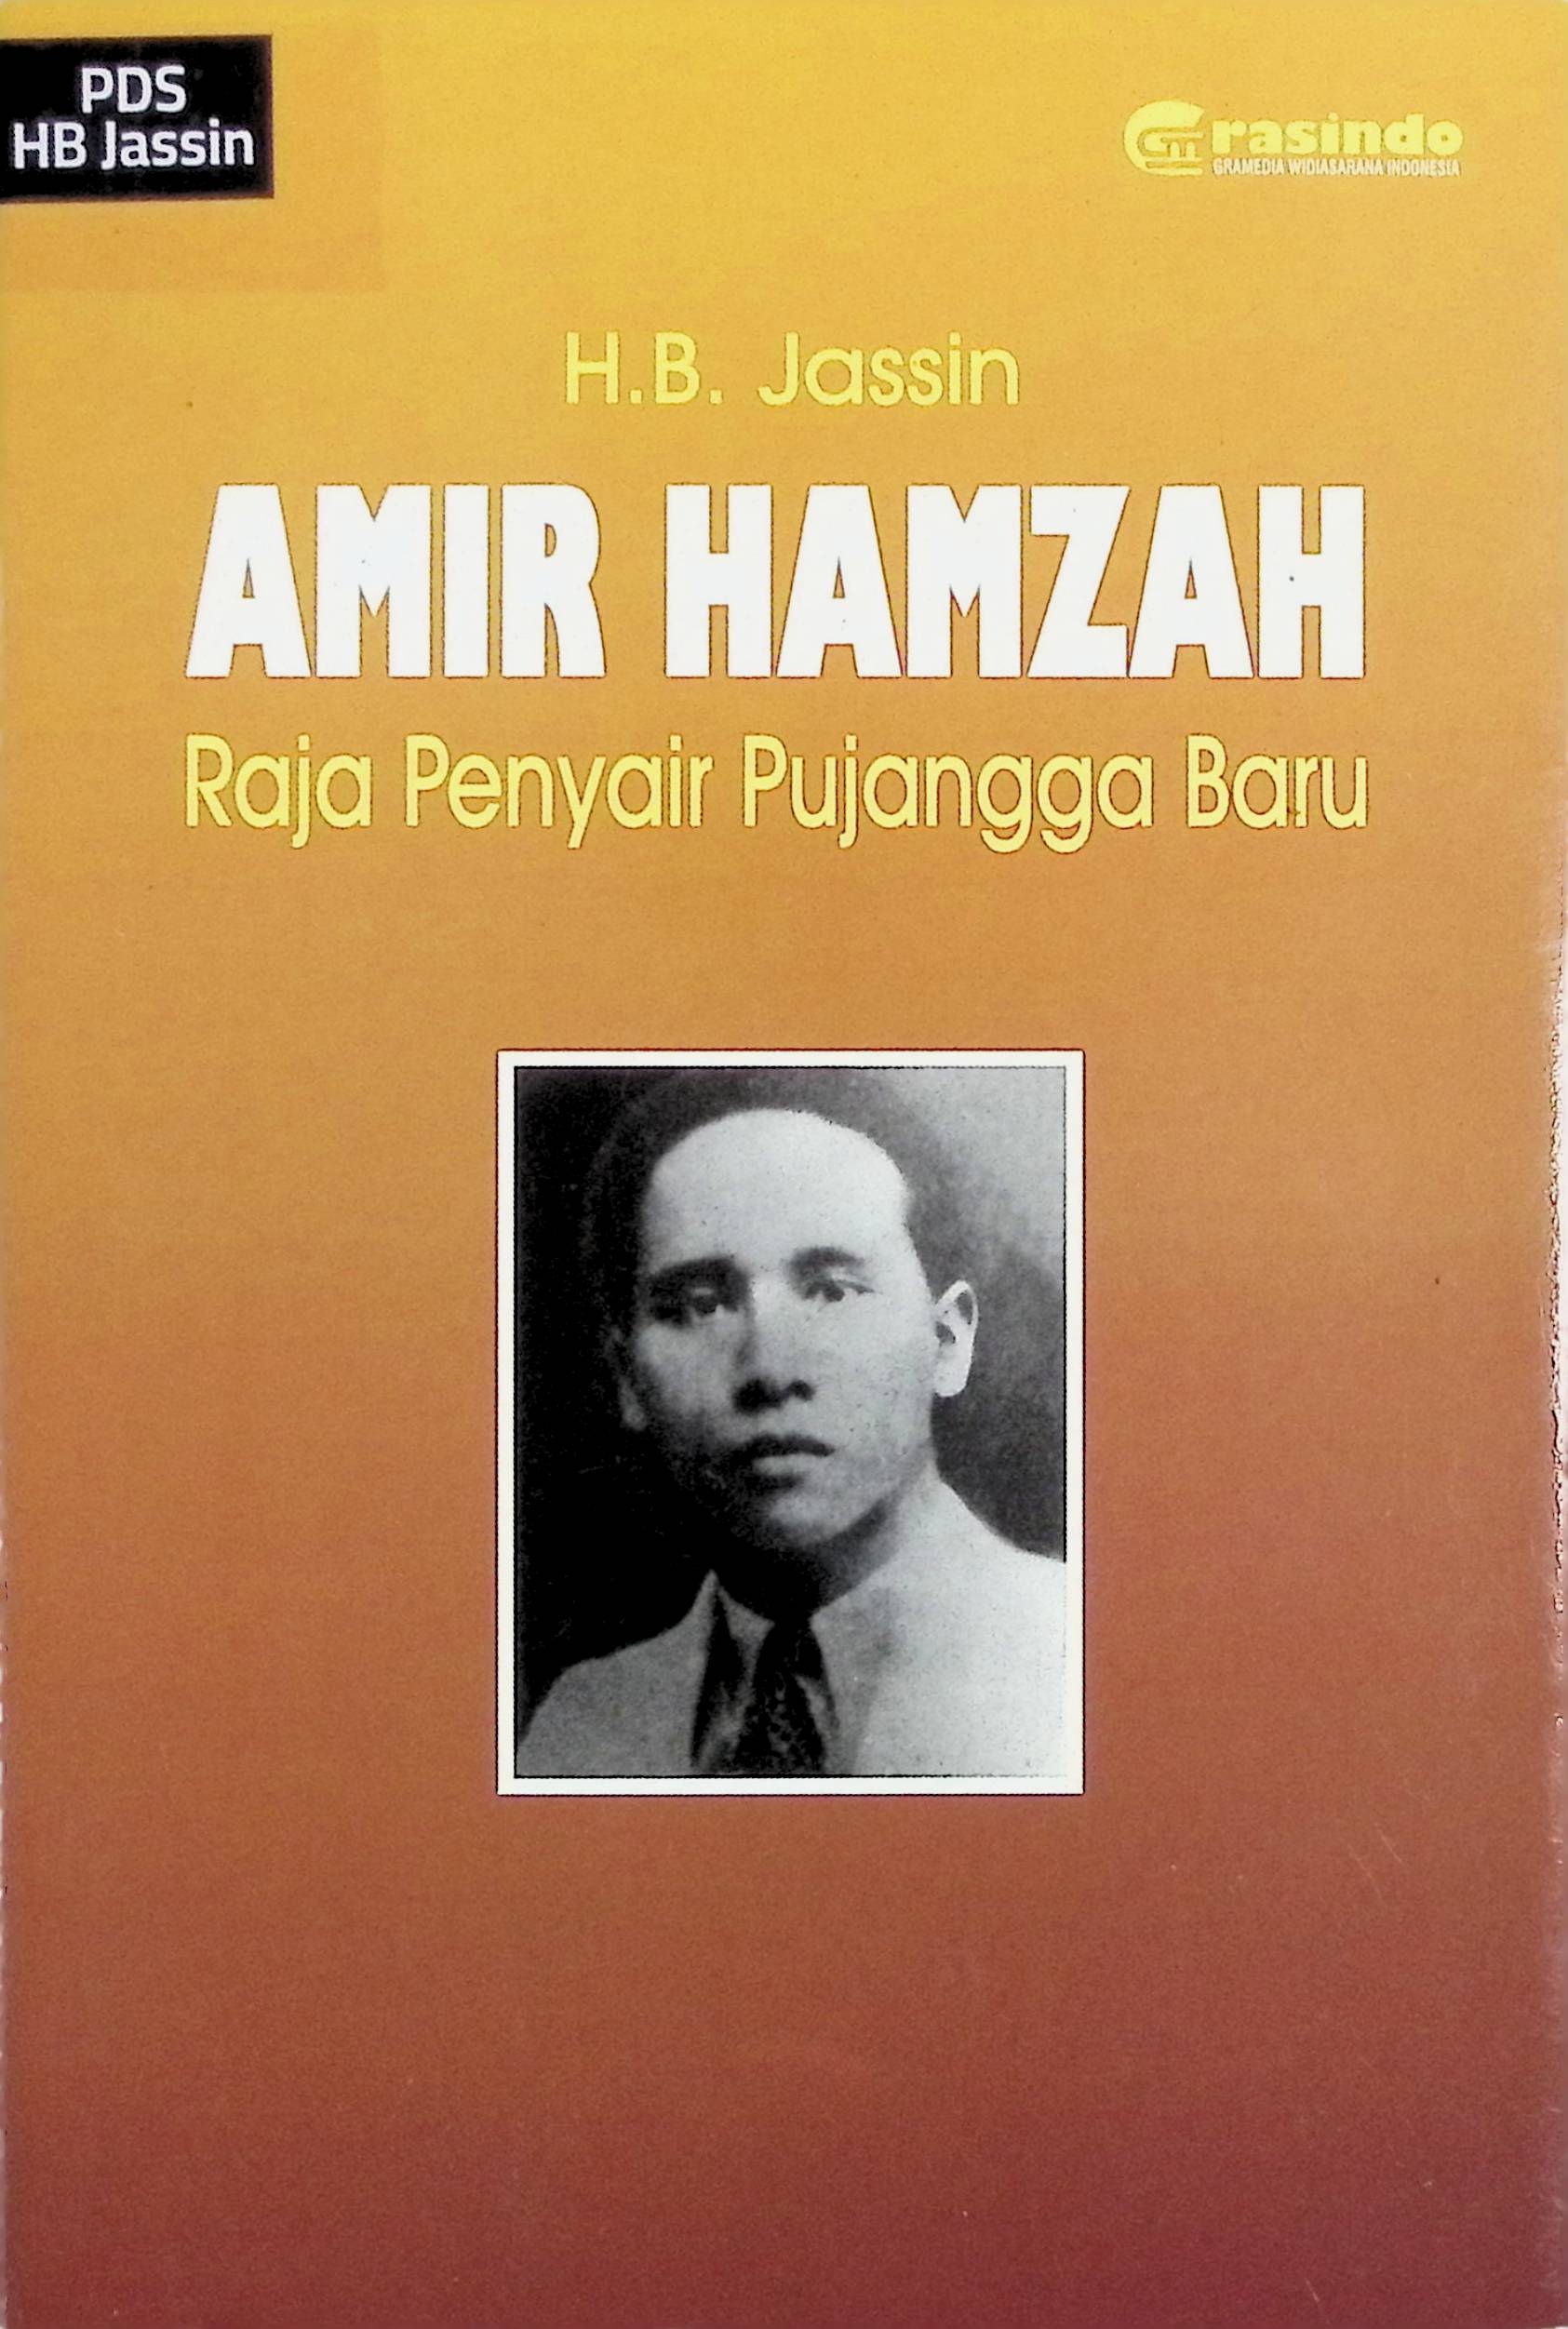 Amir Hamzah: Raja Penyair Pujangga Baru